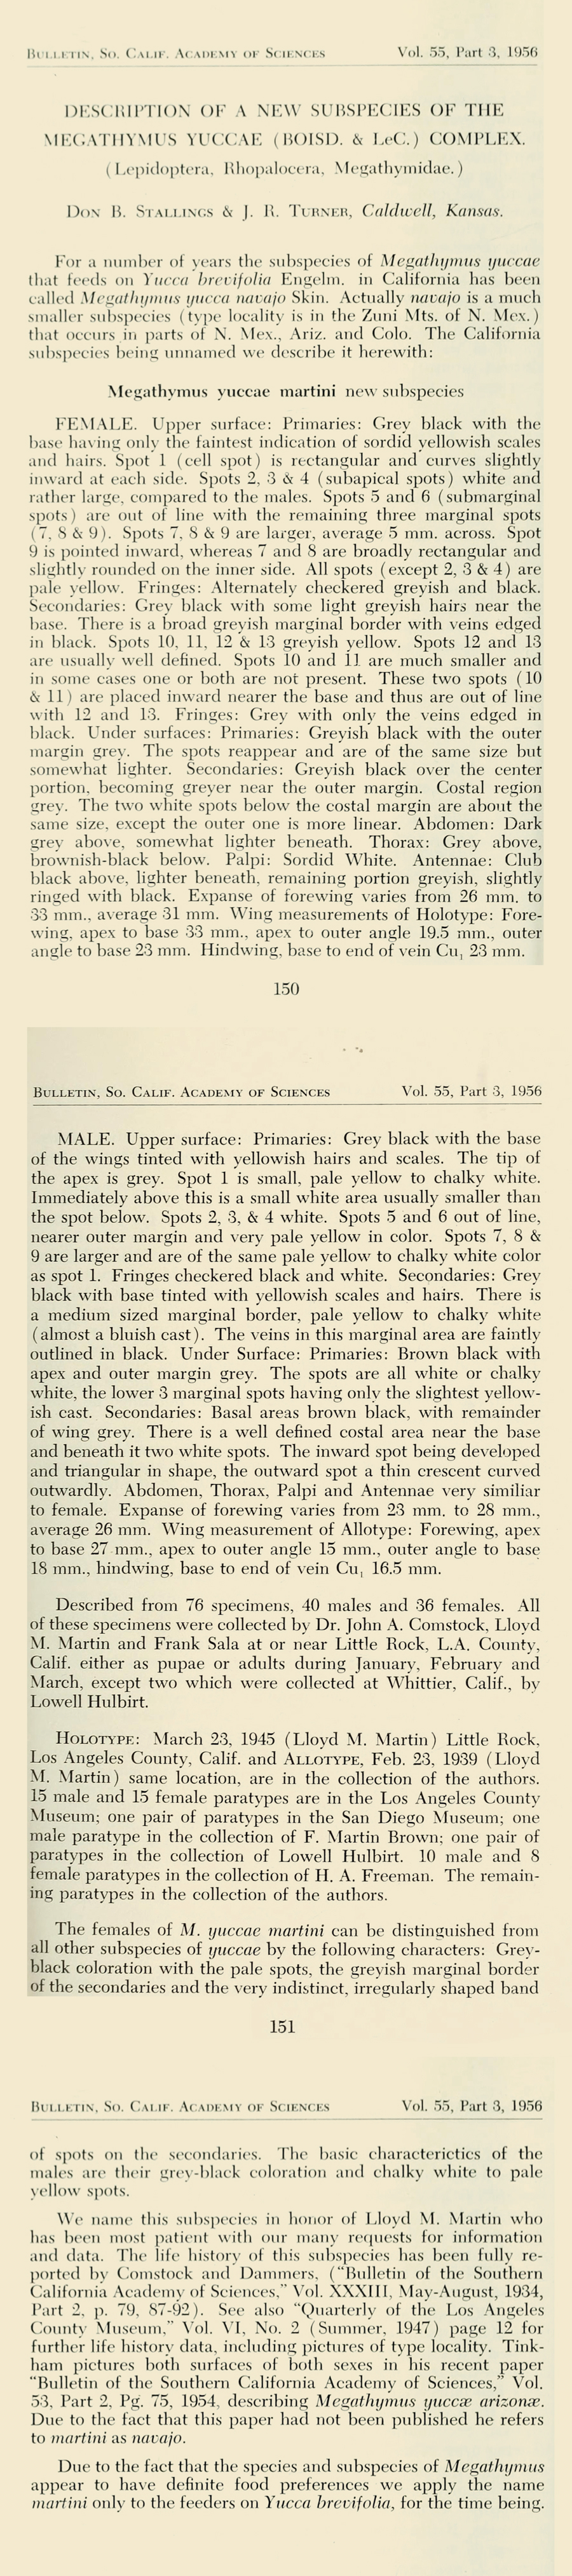 Original description of Megathymus yuccae martini - Martin's Yucca Giant Skipper